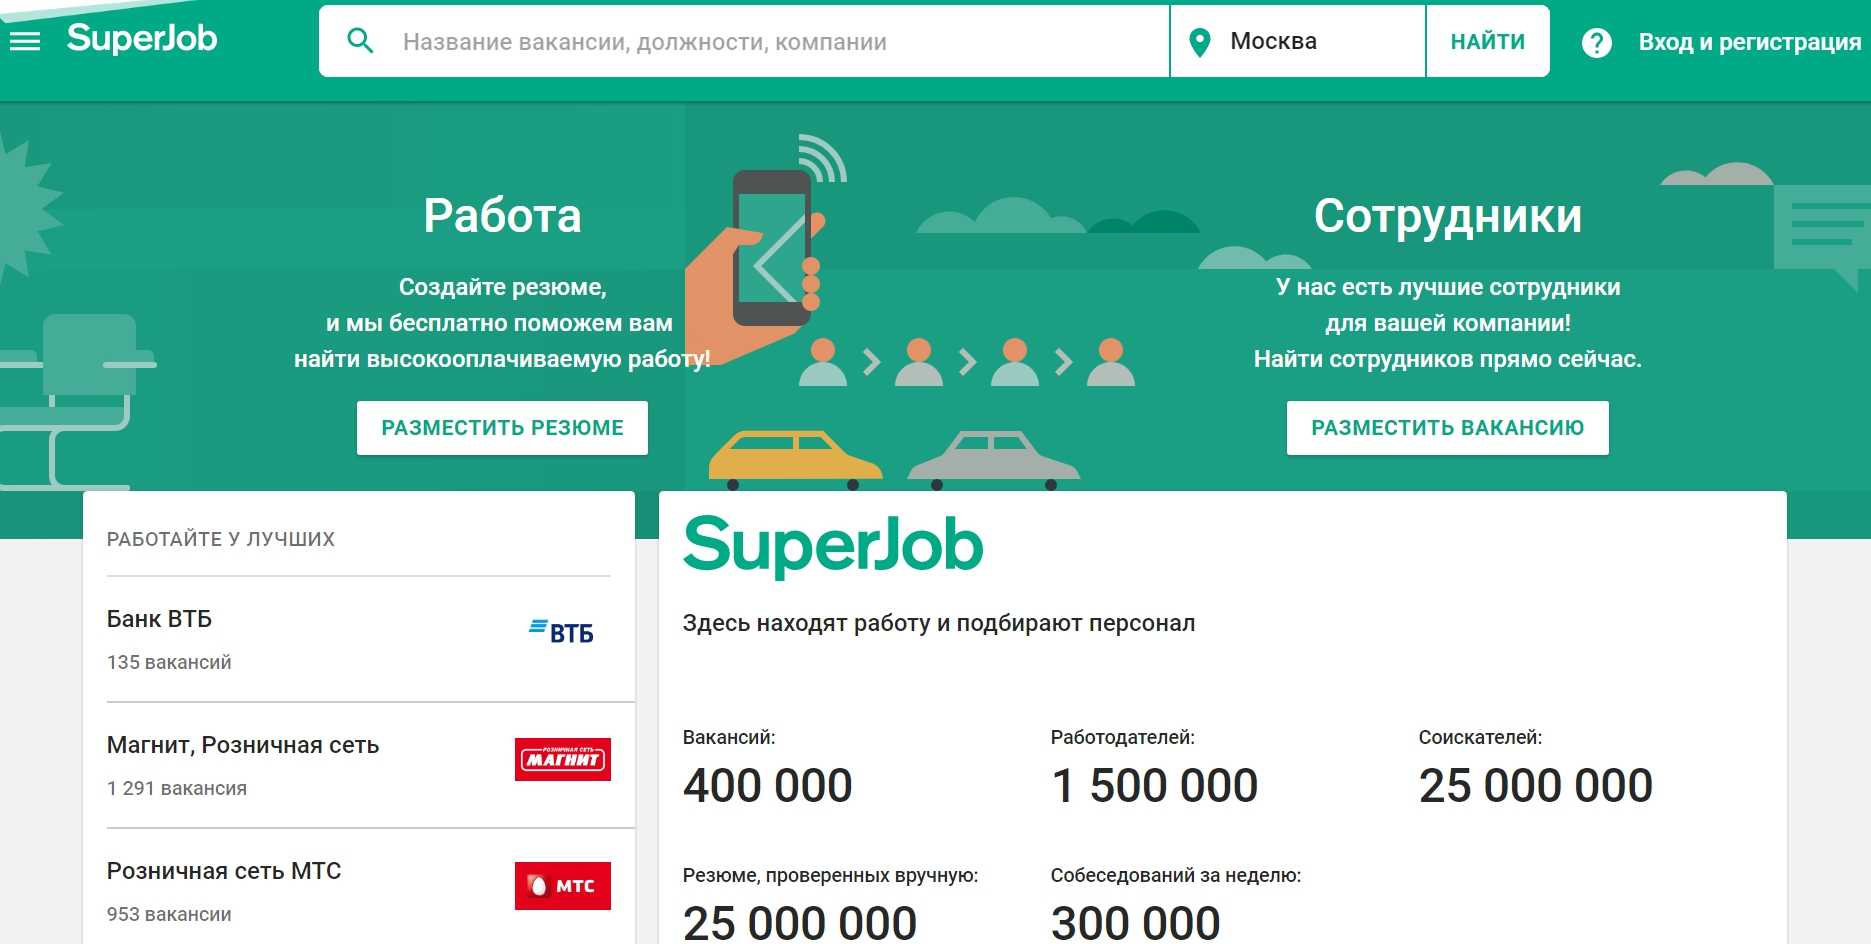 После присоединения job.ru к hh.ru, все вакансии и резюме первого ресурса п...